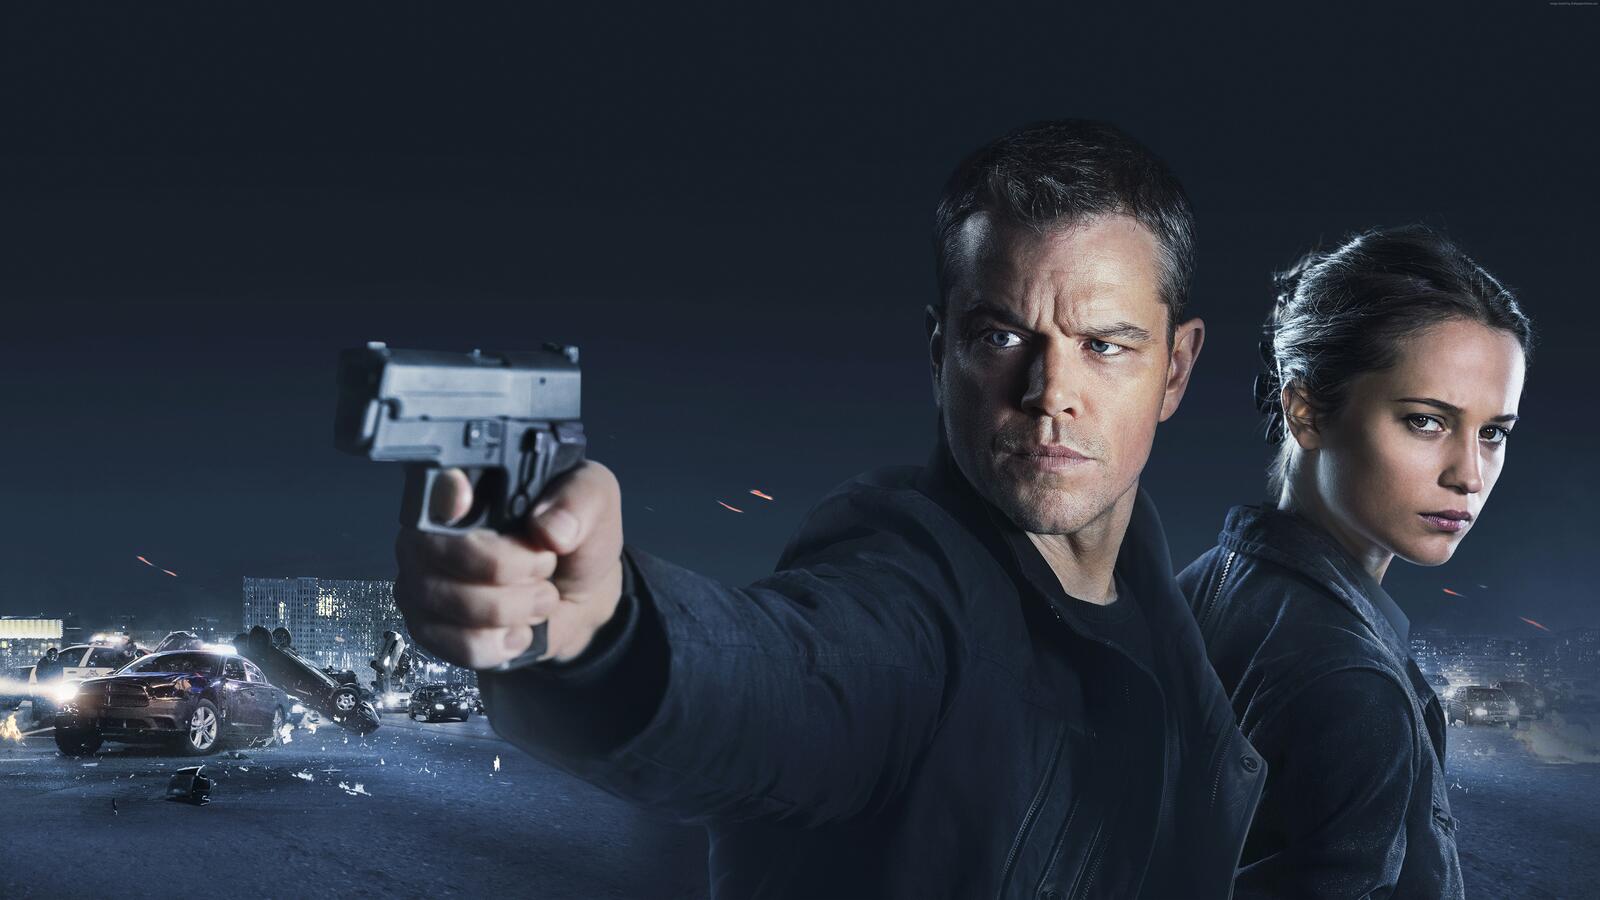 Wallpapers Jason Bourne in 2016 Matt Damon Thriller action on the desktop